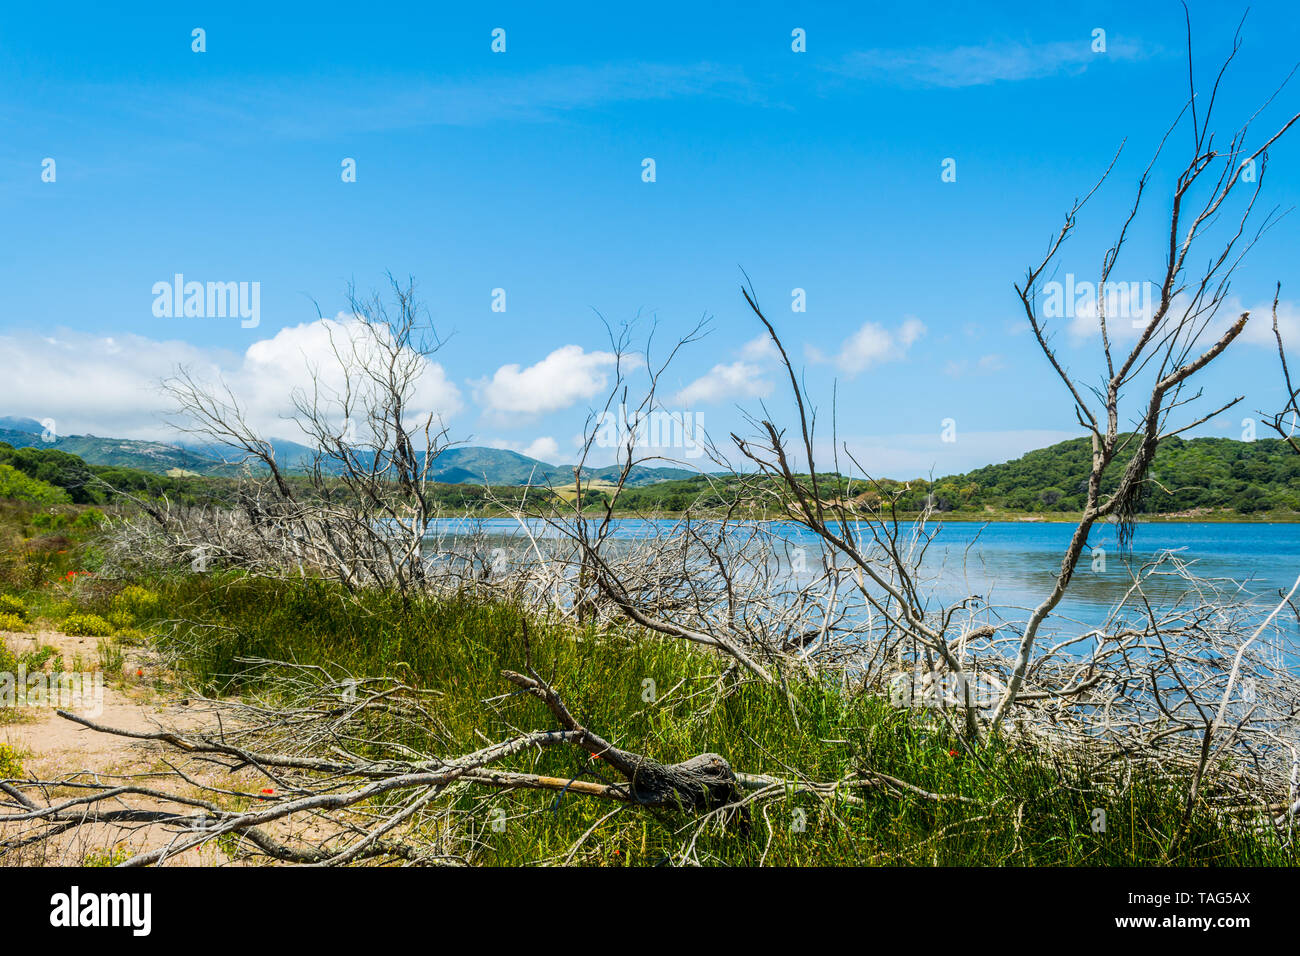 Paesaggio del lago Baratz in Sardegna, vicino alla città di Alghero, in una giornata di sole Foto Stock